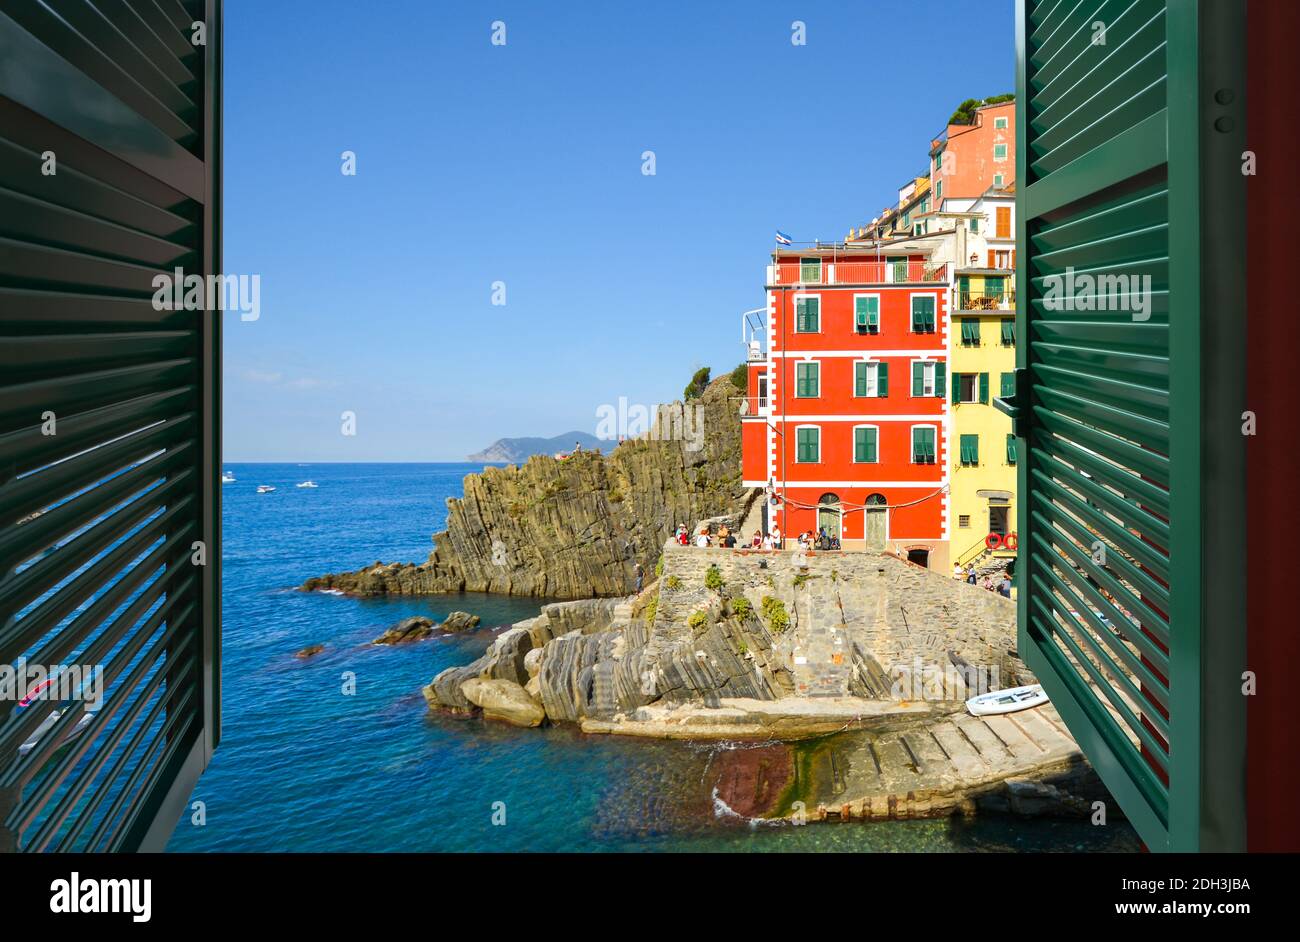 italien und Auflösung in hoher -Fotos ein – Blick offenes -Bildmaterial fenster Alamy durch